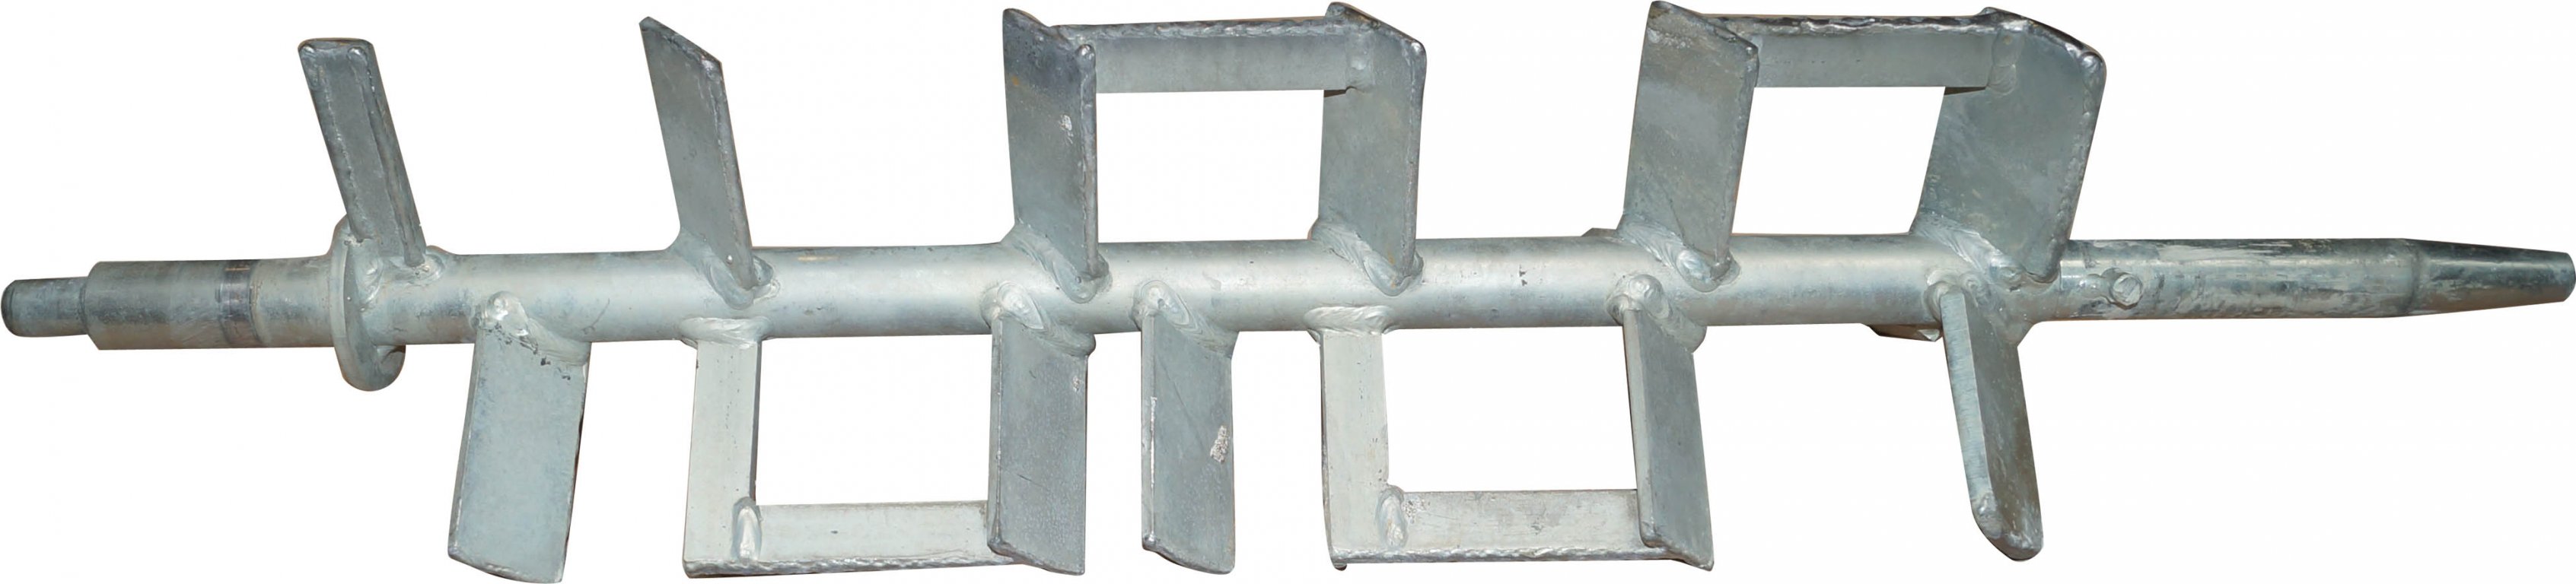 Stahl-Mischwelle für inoMIX F100, 580 mm